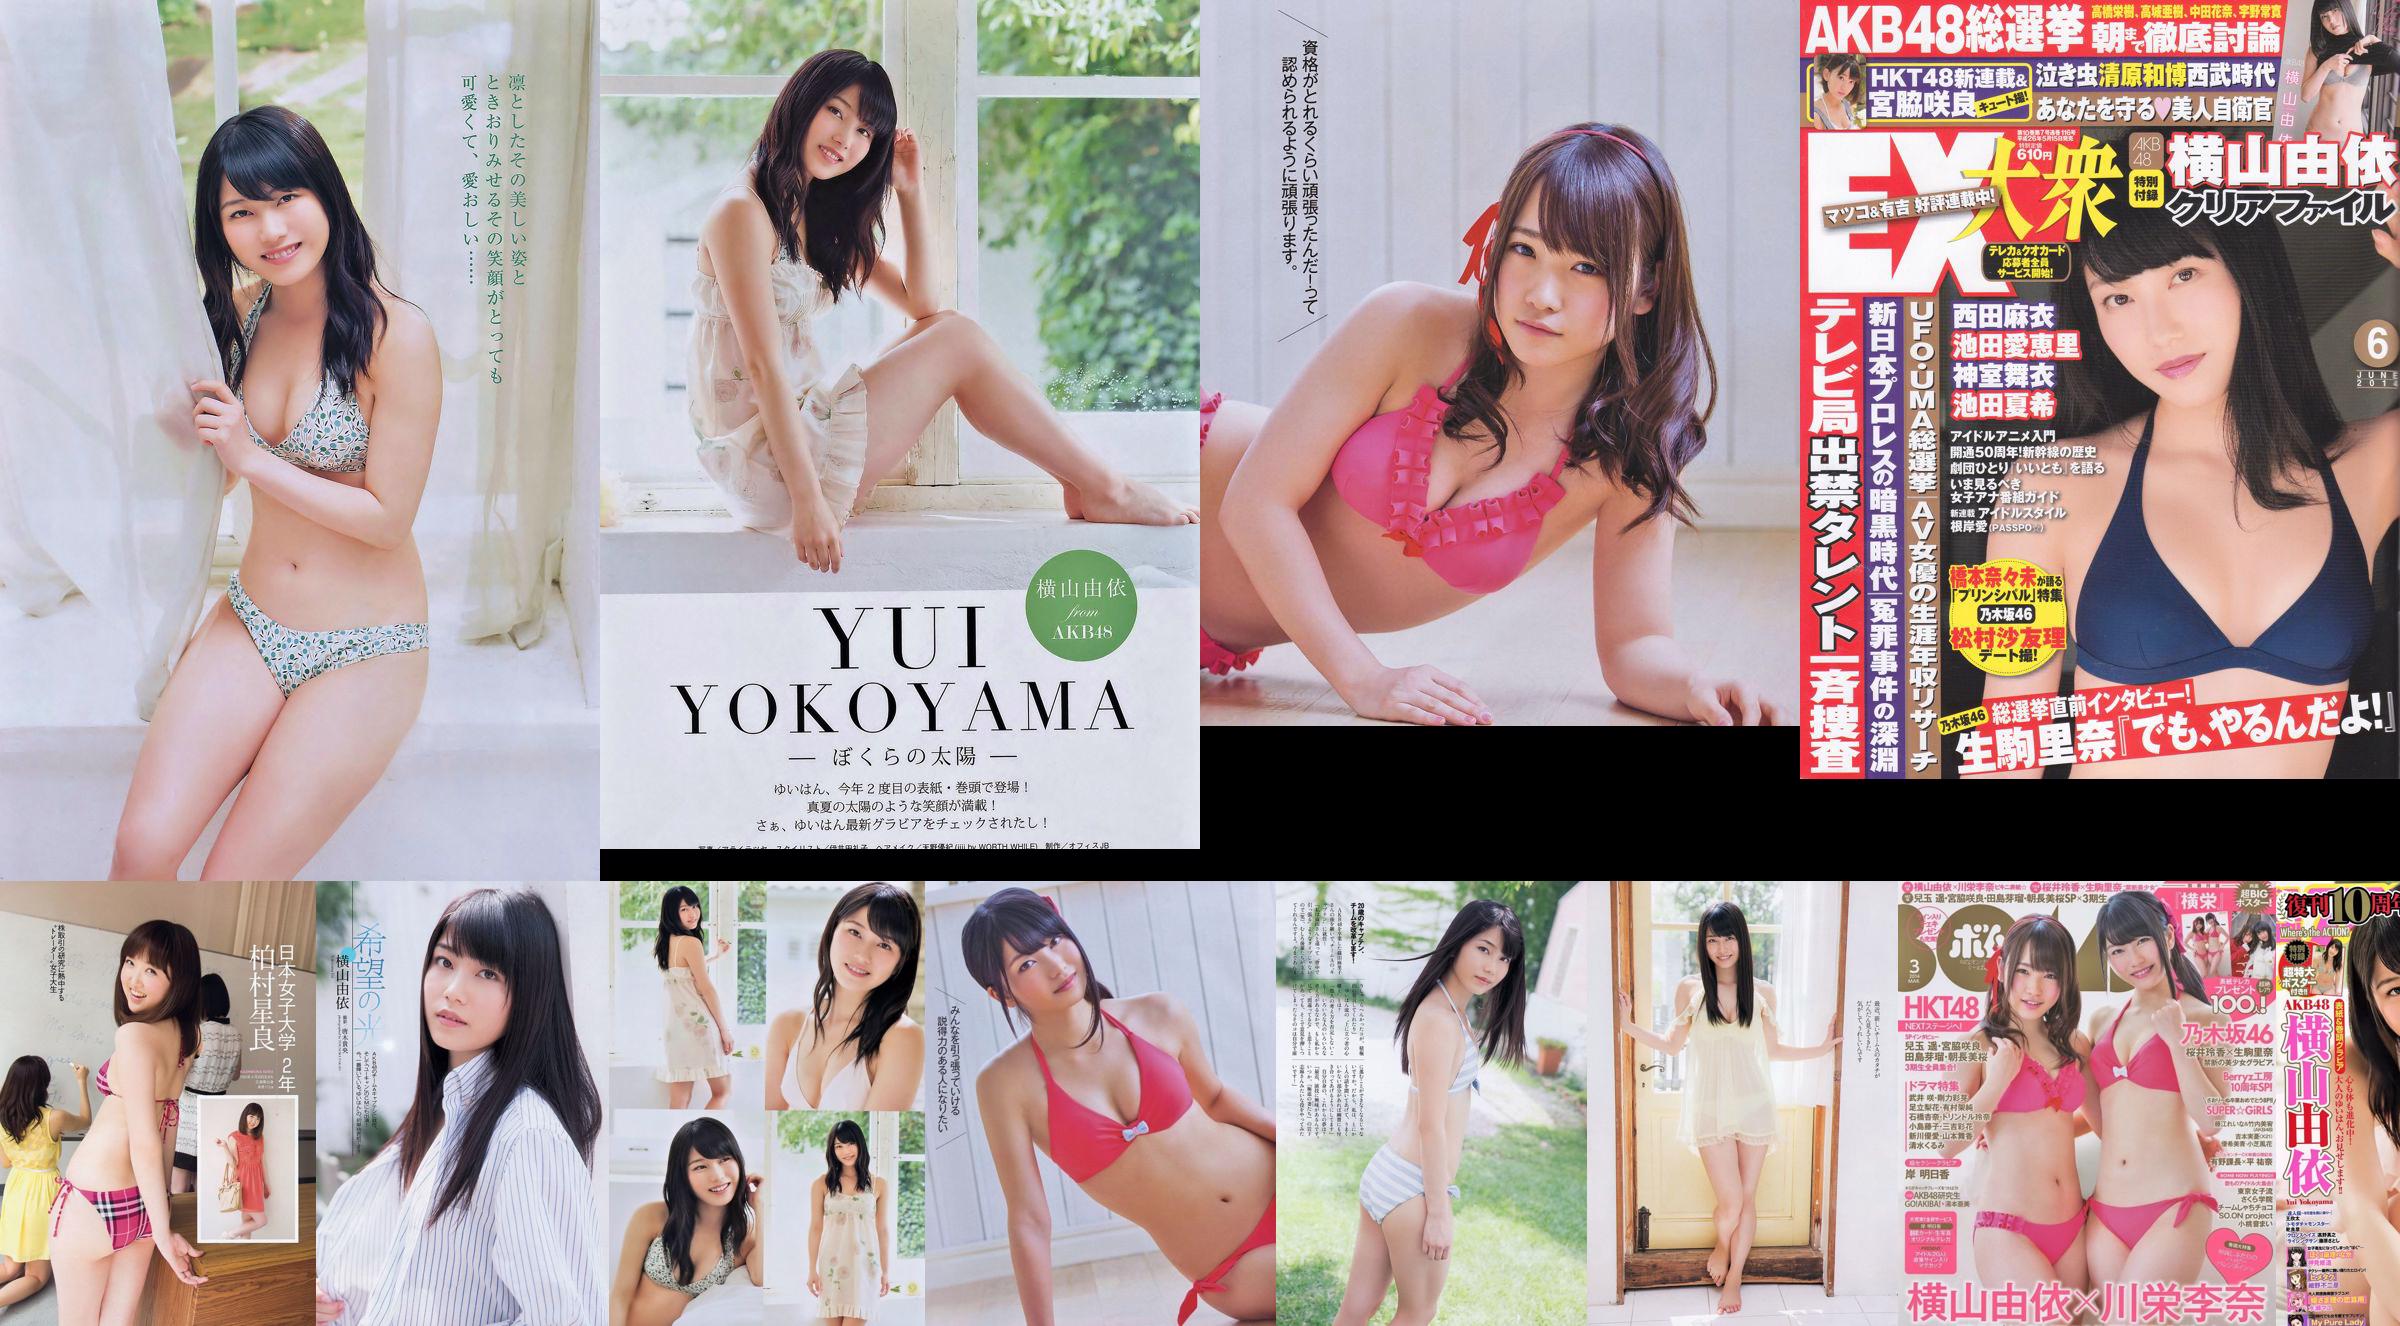 Yui Yokoyama Nozomi Sasaki Rina Koike Asuka Kuramochi Miwako Kakei Risa Yoshiki Ruri Shinato [Weekly Playboy] 2013 No.38 Foto No.6fe0c6 Halaman 1